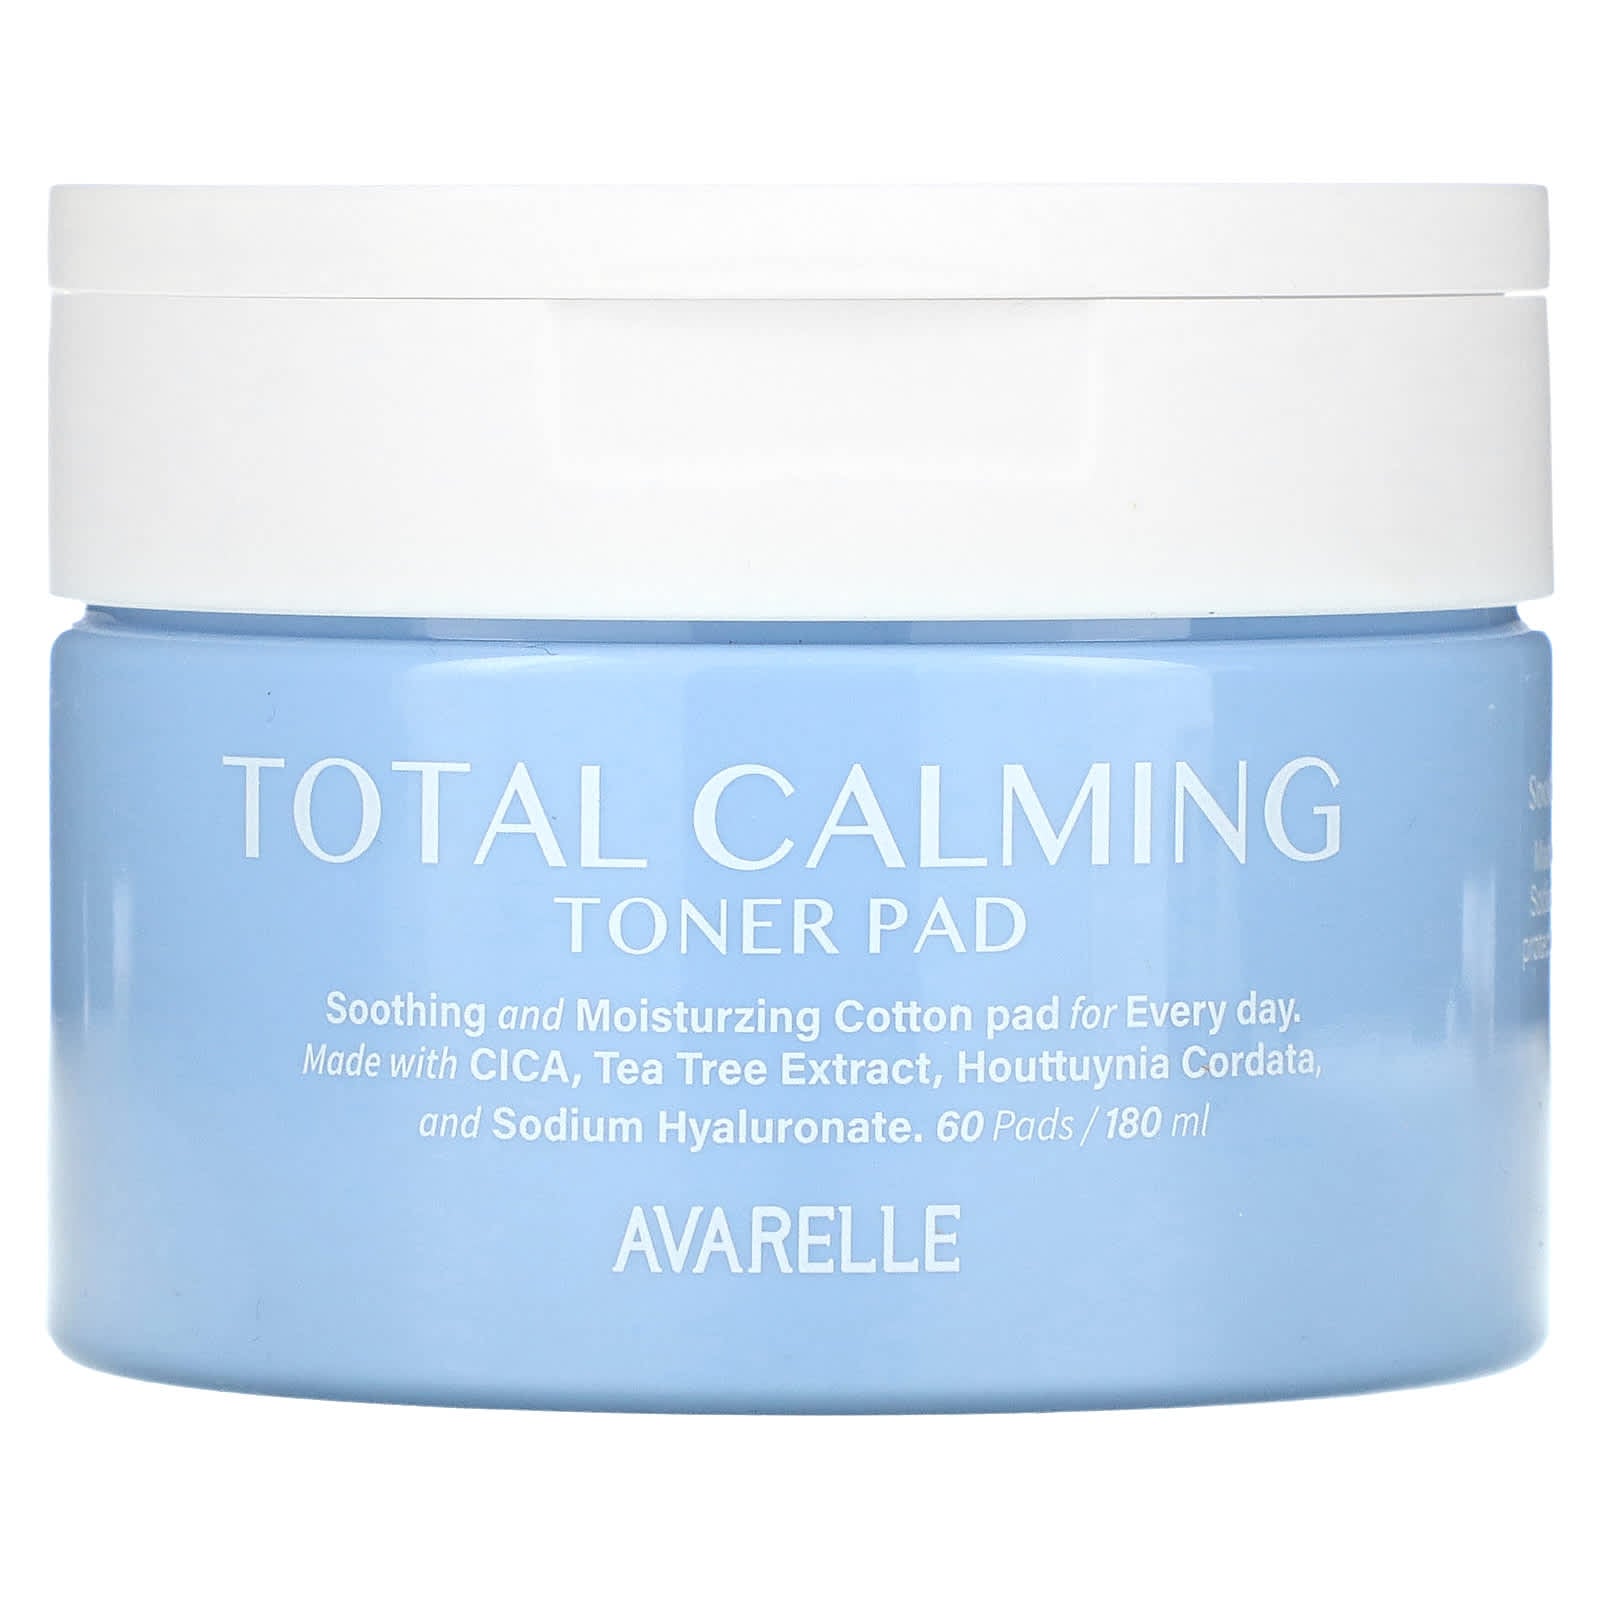 Avarelle-Total Calming Toner Pad-60 Pads-180 ml